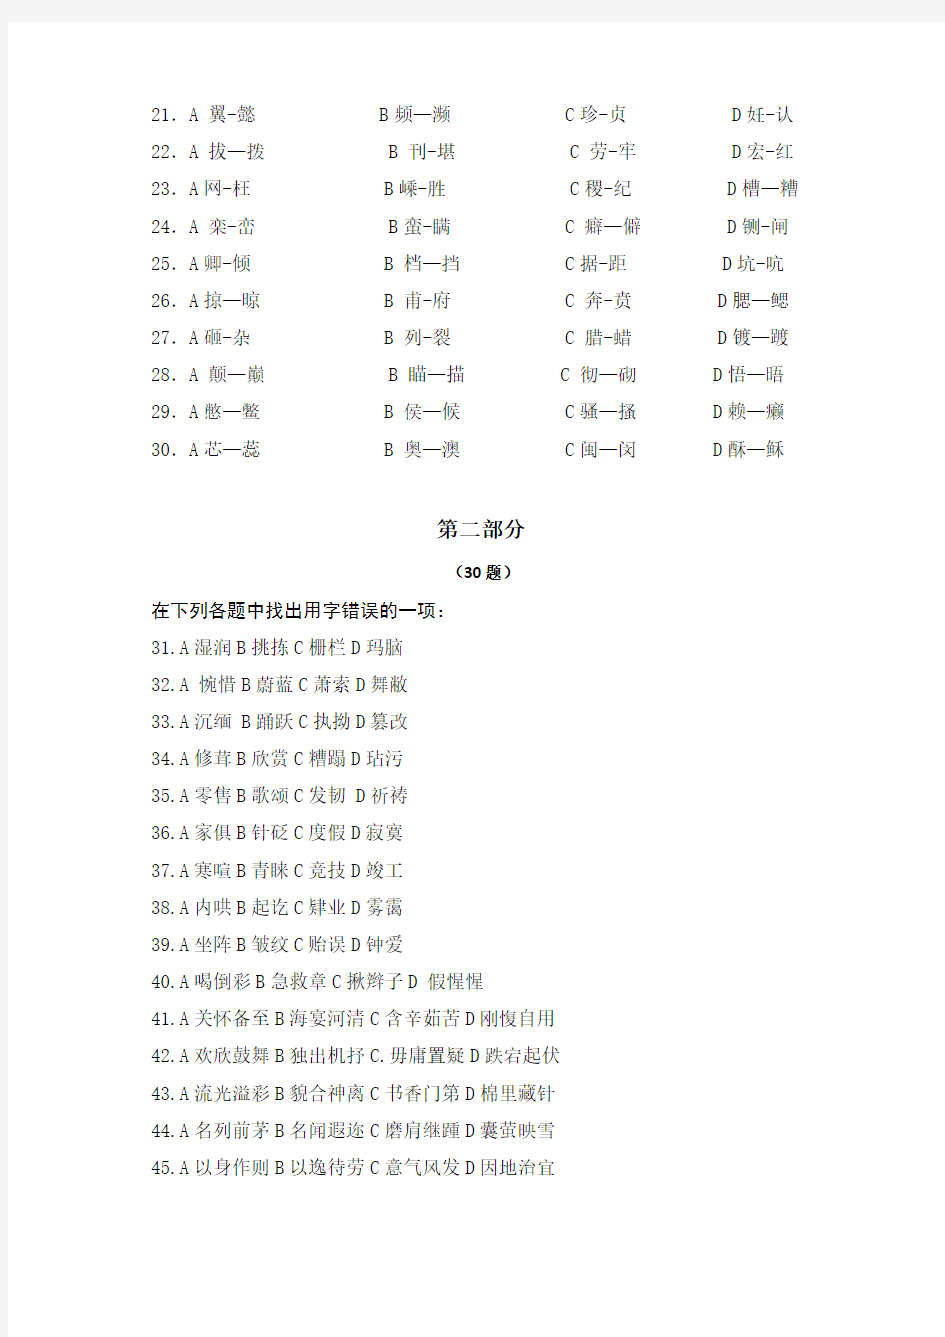 《汉字应用水平测试题》练习试卷及其参考答案 (4)